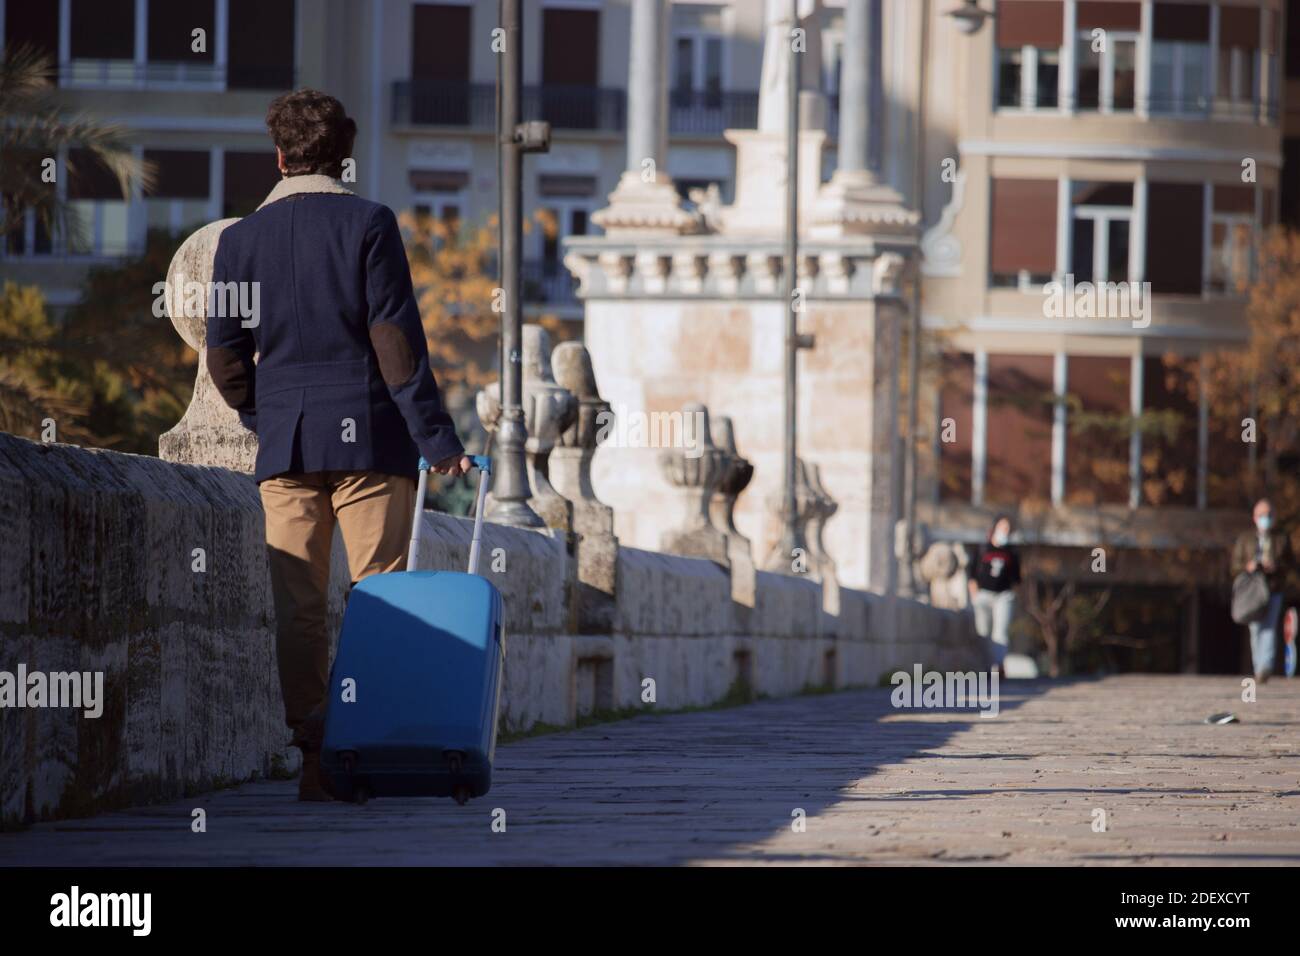 Un jeune homme méconnaissable se rend en Espagne lors d'une pandémie avec une valise bleue tout en marchant dans le centre d'une ville à des fins d'affaires. Banque D'Images